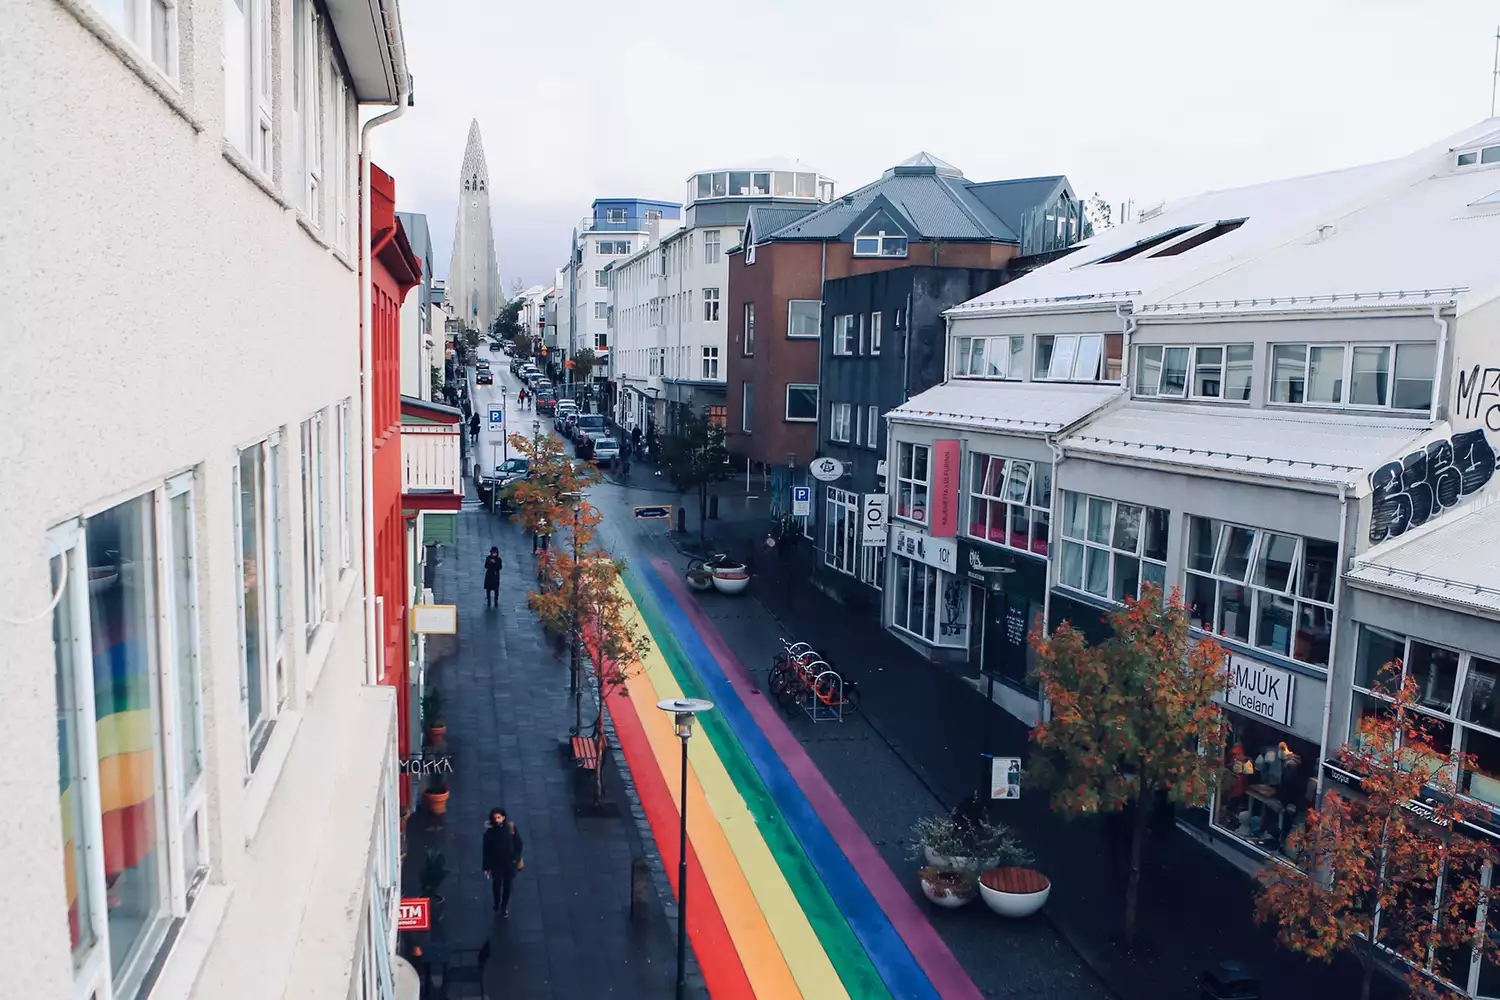 Con đường nhiều màu sắc giữa những tòa nhà ở Reykjavik, Iceland